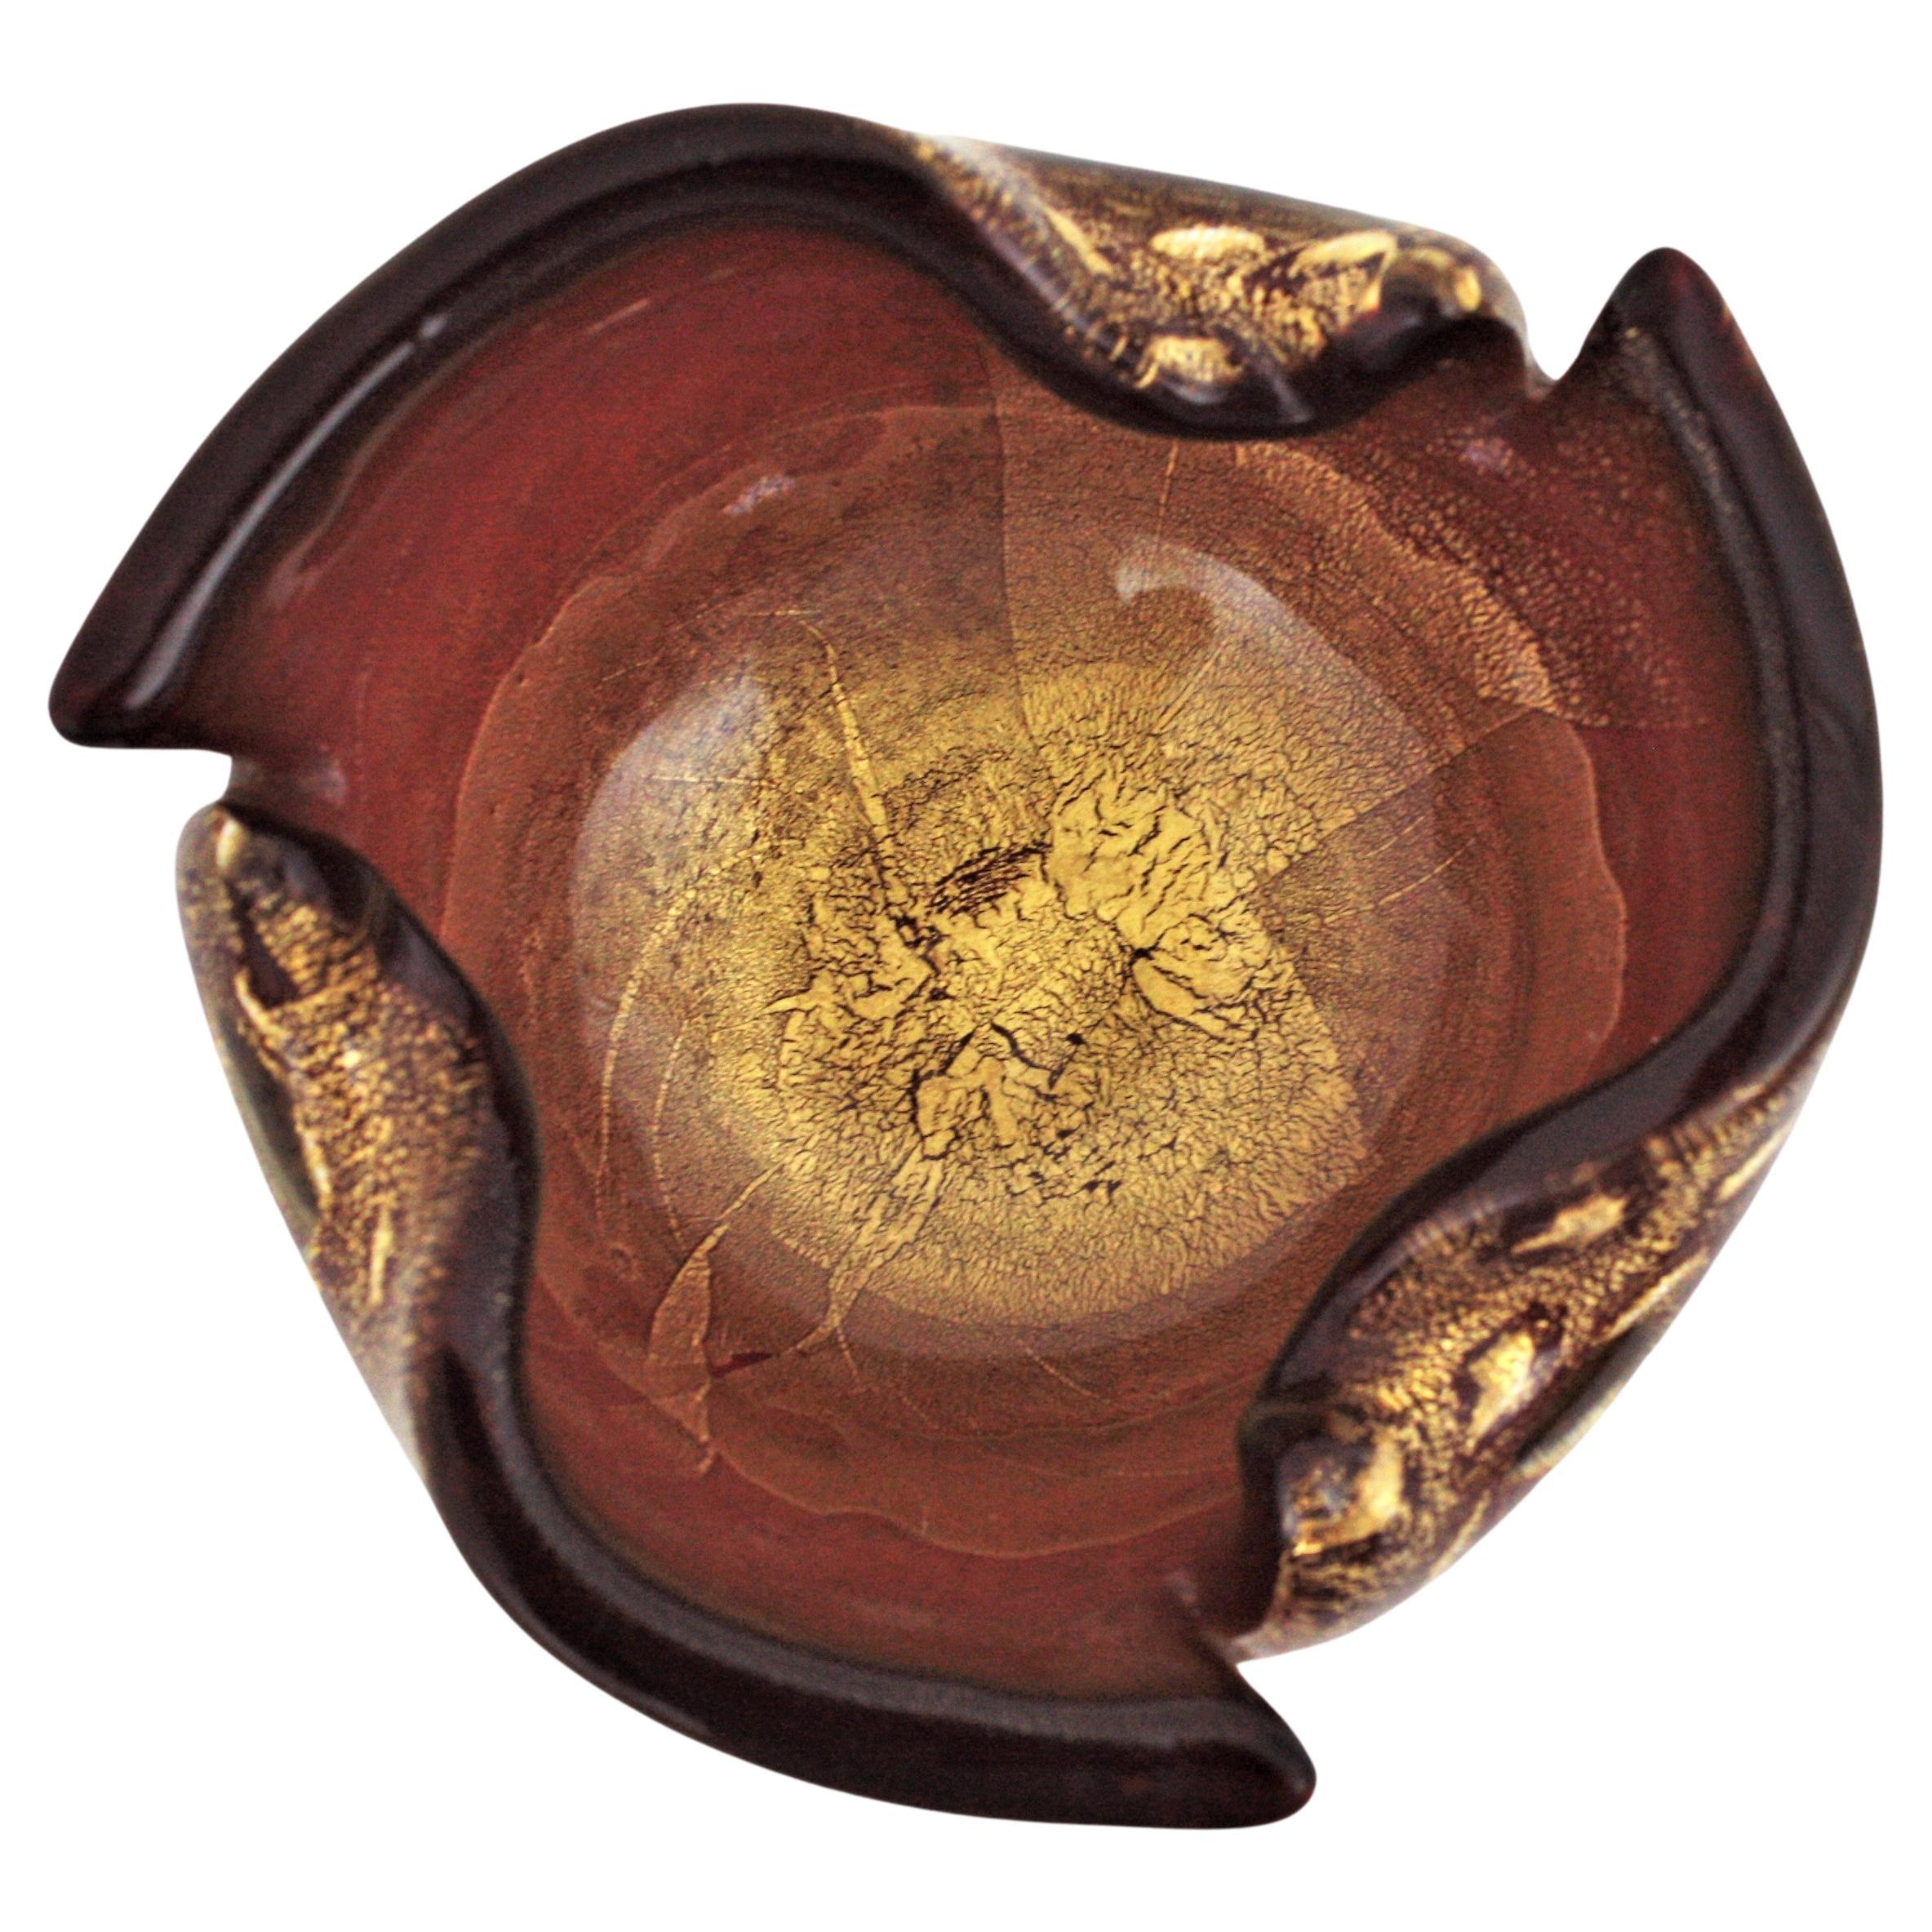 Auffällige mundgeblasene Murano Schale oder Aschenbecher aus Kunstglas in Preiselbeerrot mit goldenen Flecken und kontrollierten Blasen. Archimede Seguso zugeschrieben, Italien, 1950er Jahre.
Diese atemberaubende Glasschale hat einen frei